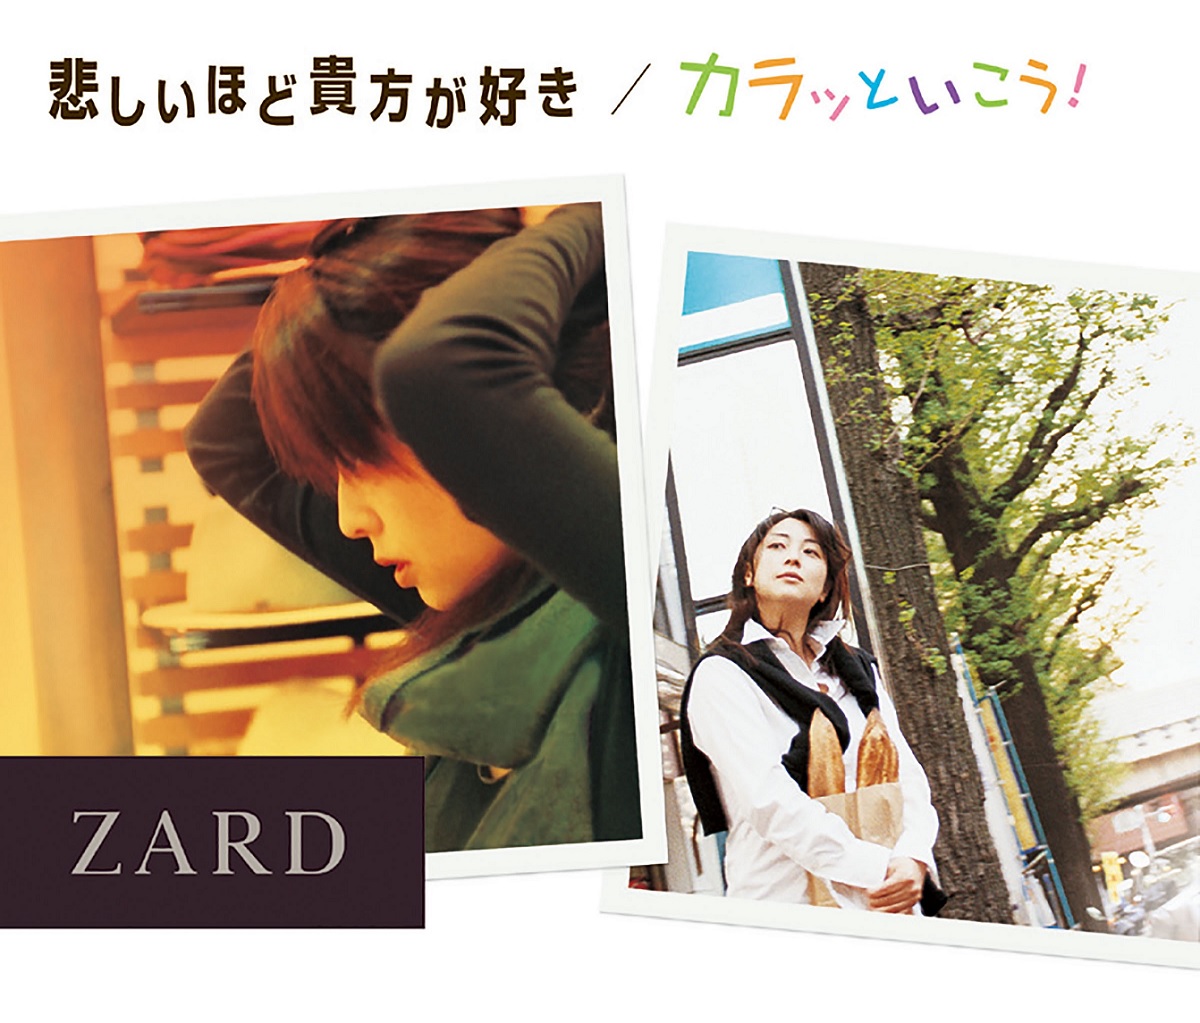 Cover art for『ZARD - 悲しいほど貴方が好き』from the release『Kanashii Hodo Anata ga Suki / Karatto Ikou!